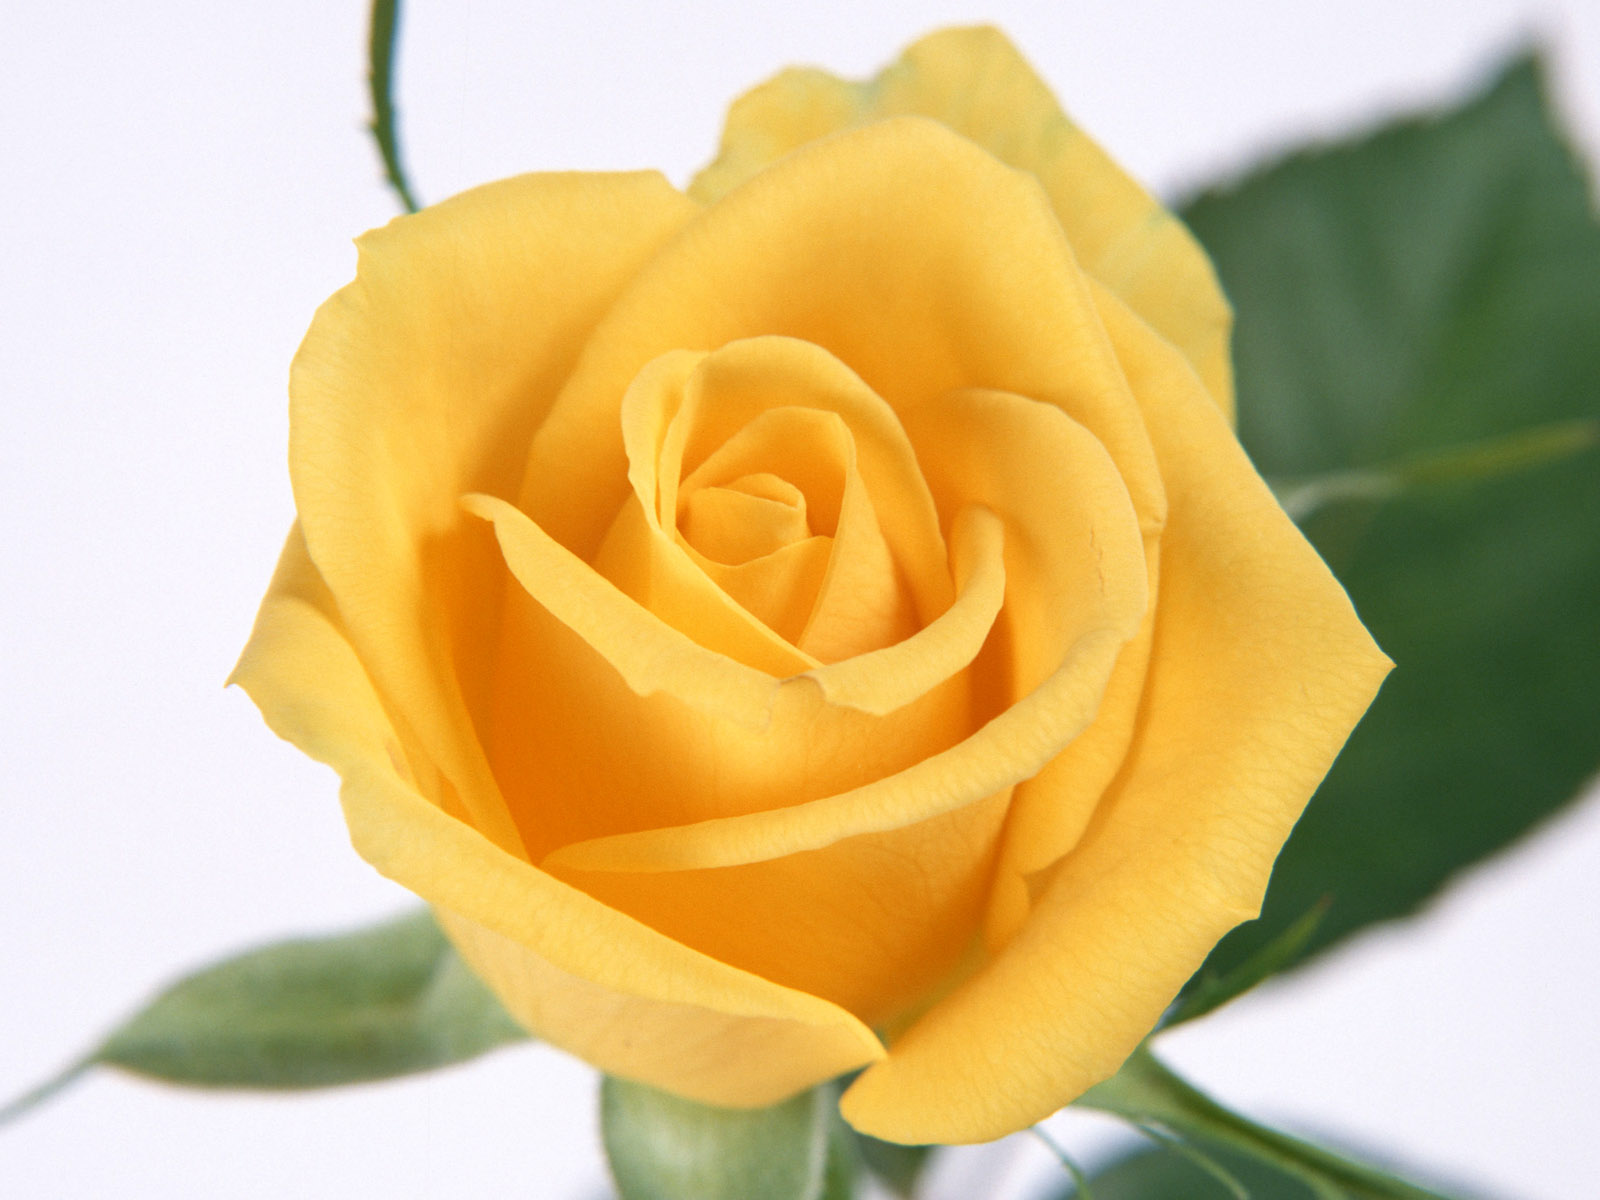 http://2.bp.blogspot.com/-jehr7DpKGUY/TV31waFQNMI/AAAAAAAAJAk/lzC-AYUh85g/s1600/yellow+rose+flowers+wallpapers+%25282%2529.jpg